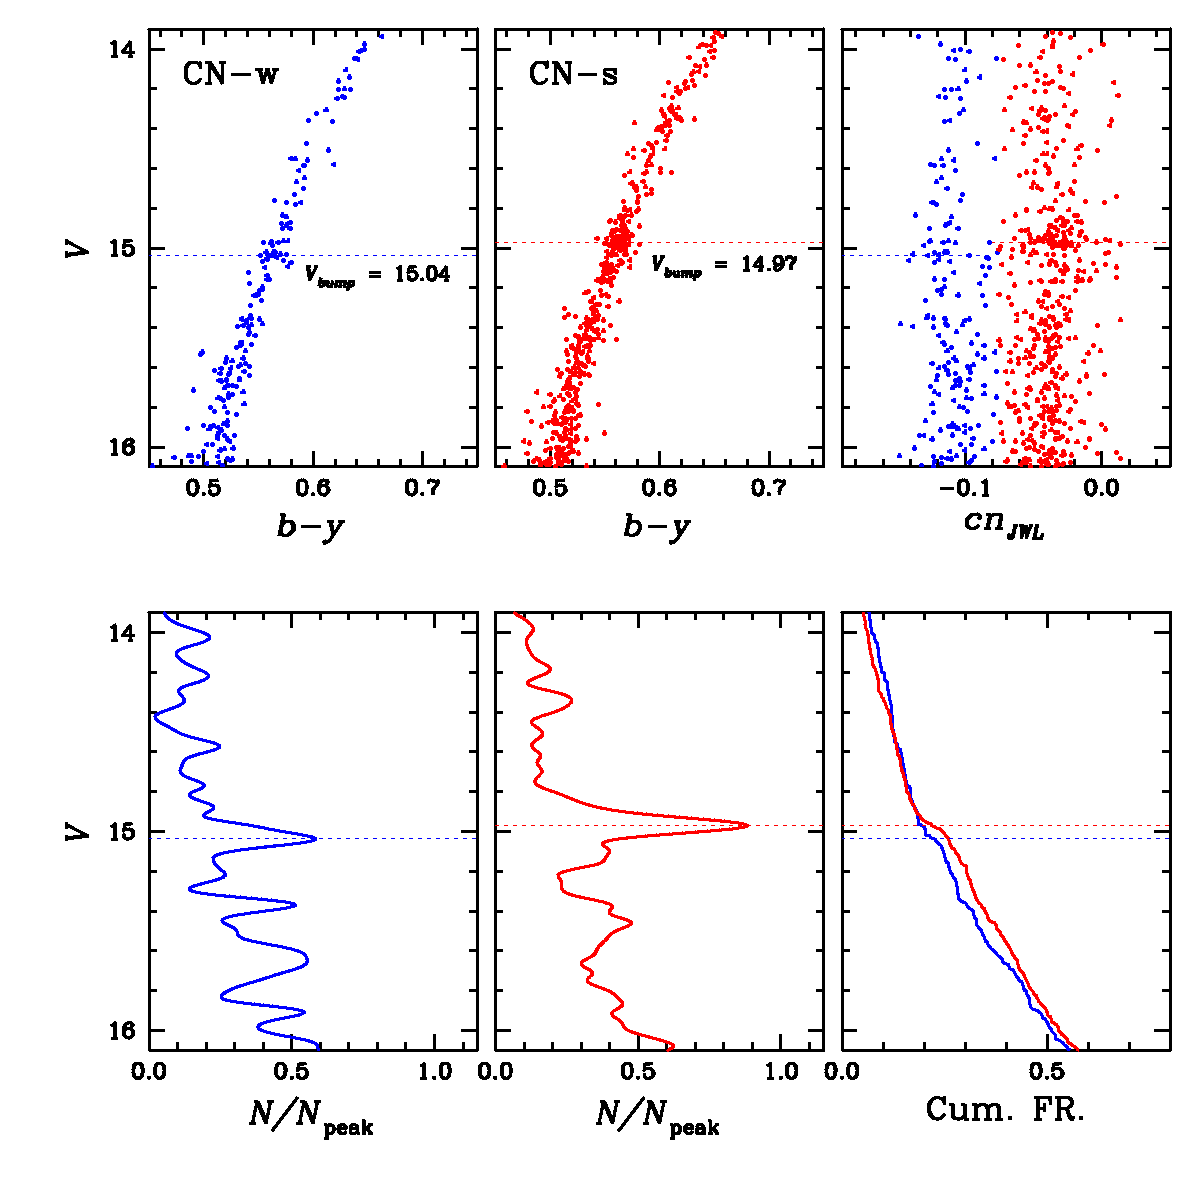 구상성단 M5에 존재하는 두 종족의 적색 거성에 대한 색-등급도 및 차등 광도 함수. CN-s (붉은색) 적색거성 범프는 CN-w (푸른색)의 것보다 약 0.07등급 더 밝은 곳에 나타나며, 이는 헬륨함량의 증가(ΔY = 0.028)로 설명할 수 있다 (Lee 2017)